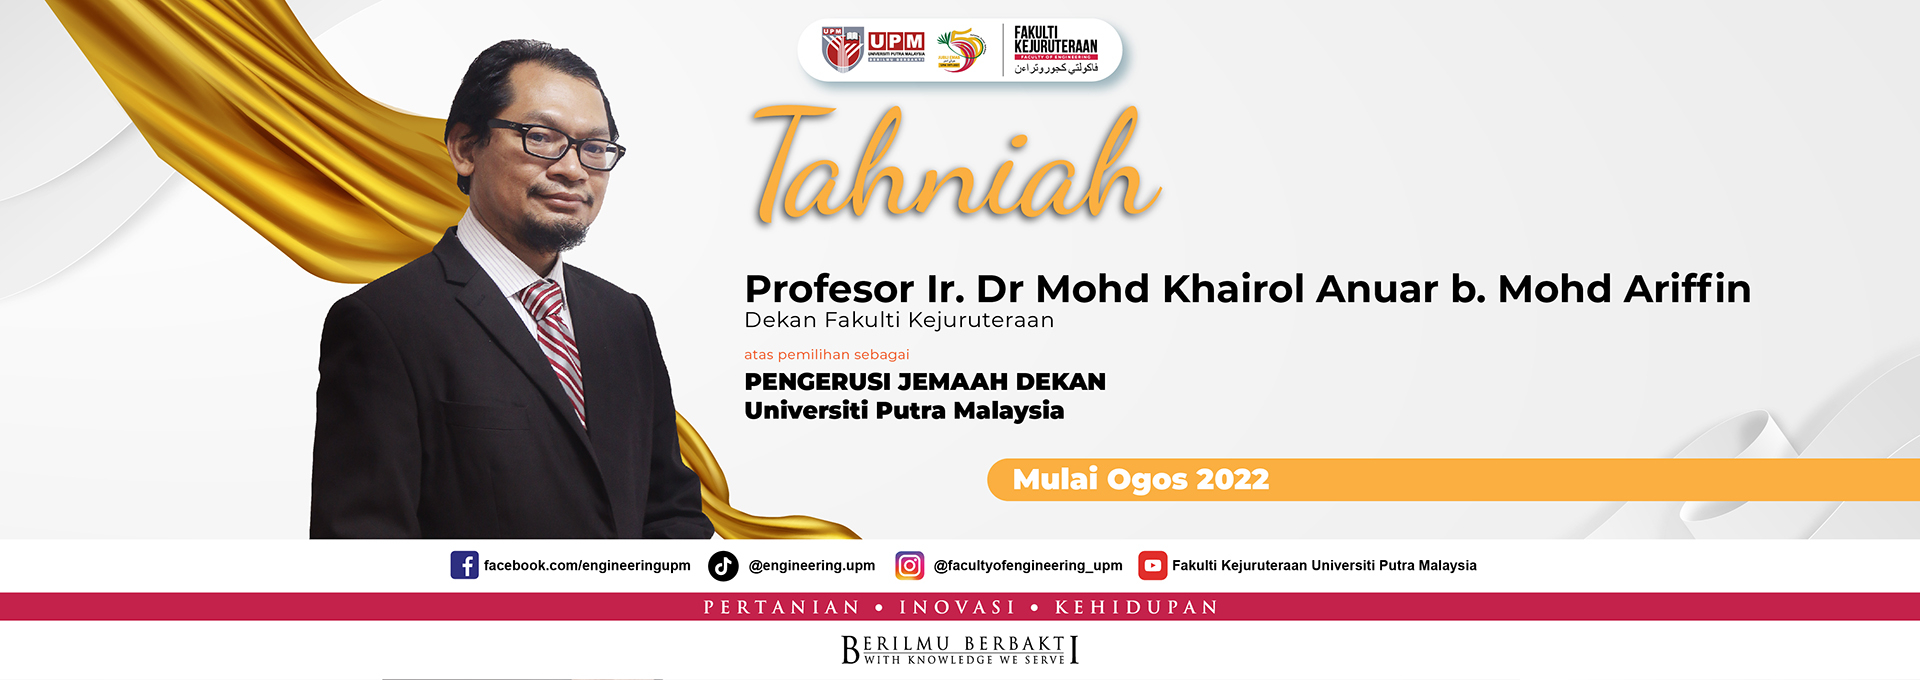 PENGERUSI JEMAAH DEKAN Universiti Putra Malaysia